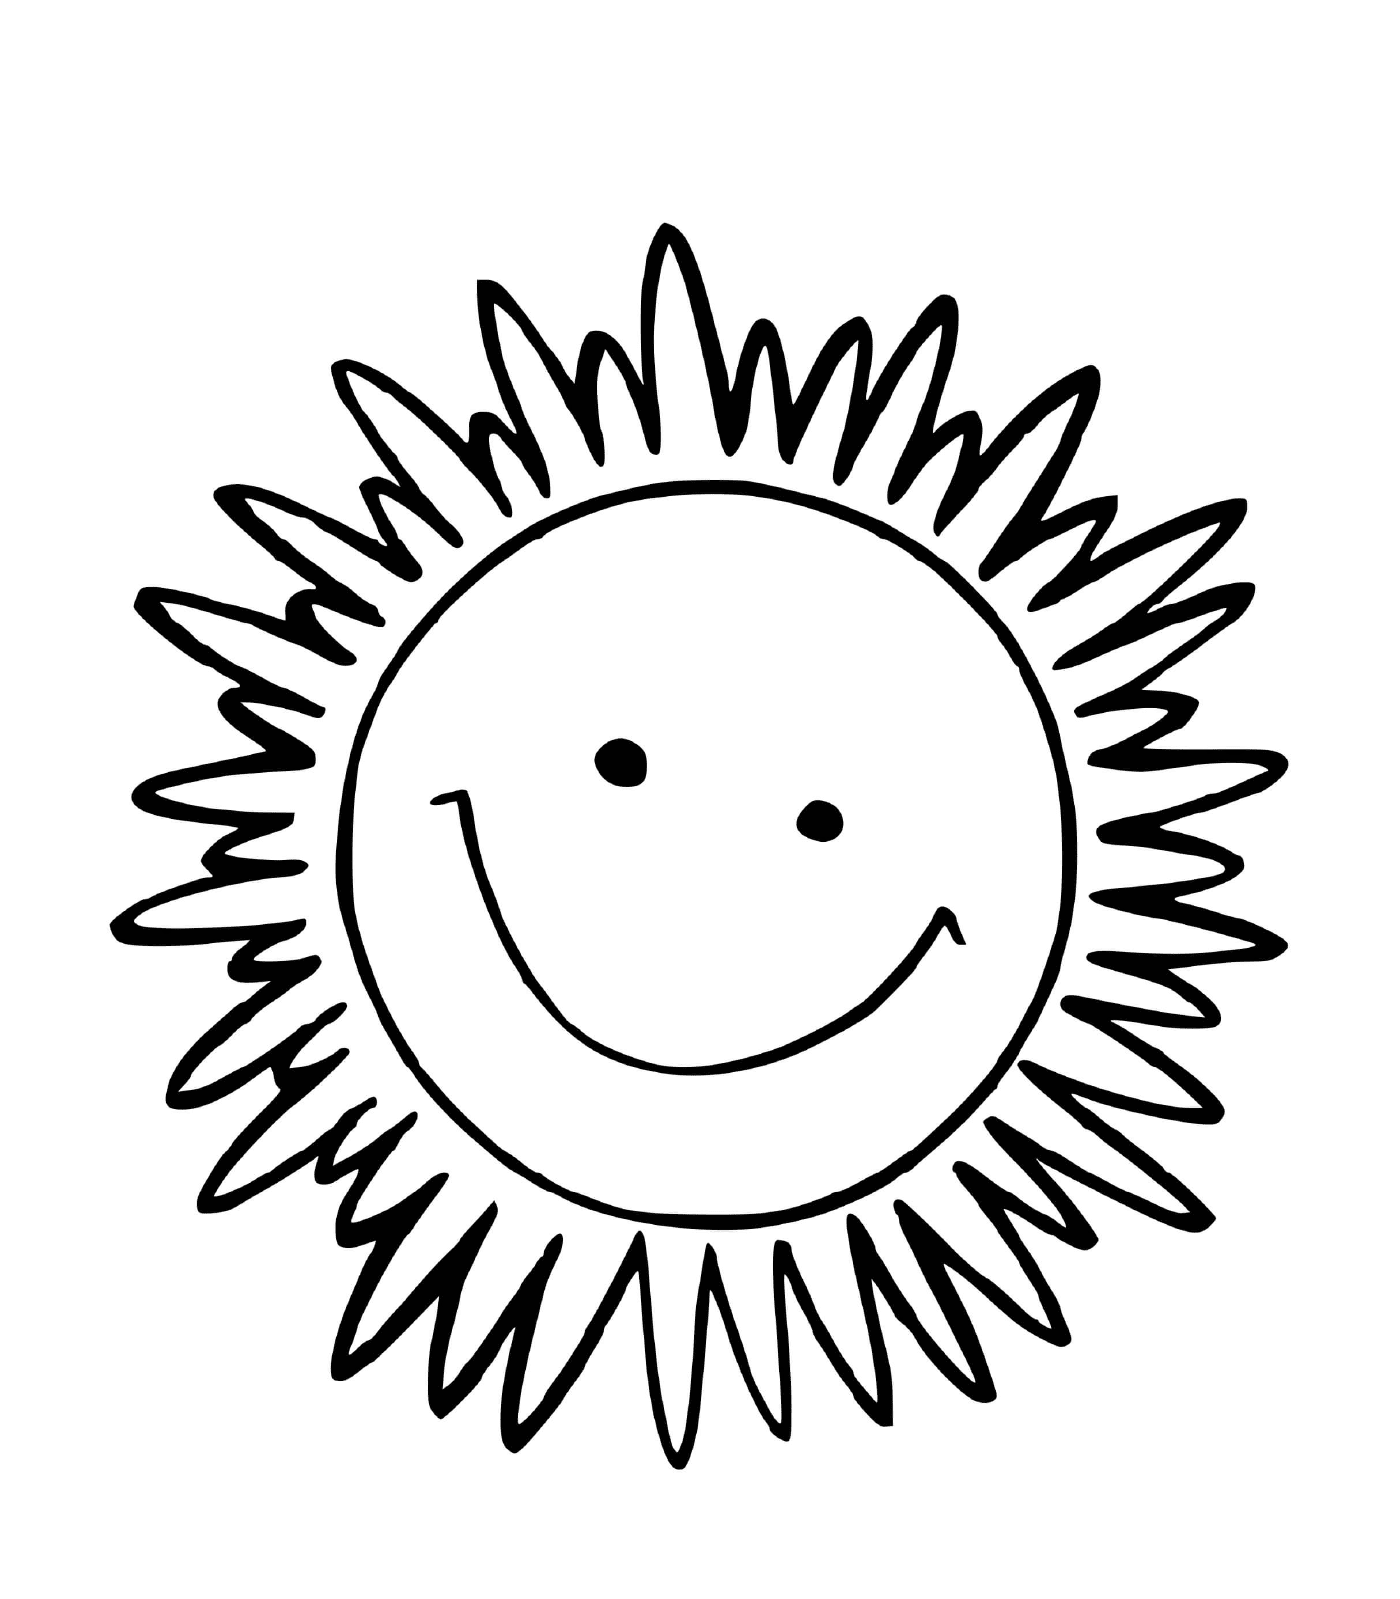  太阳在花朵中微笑 